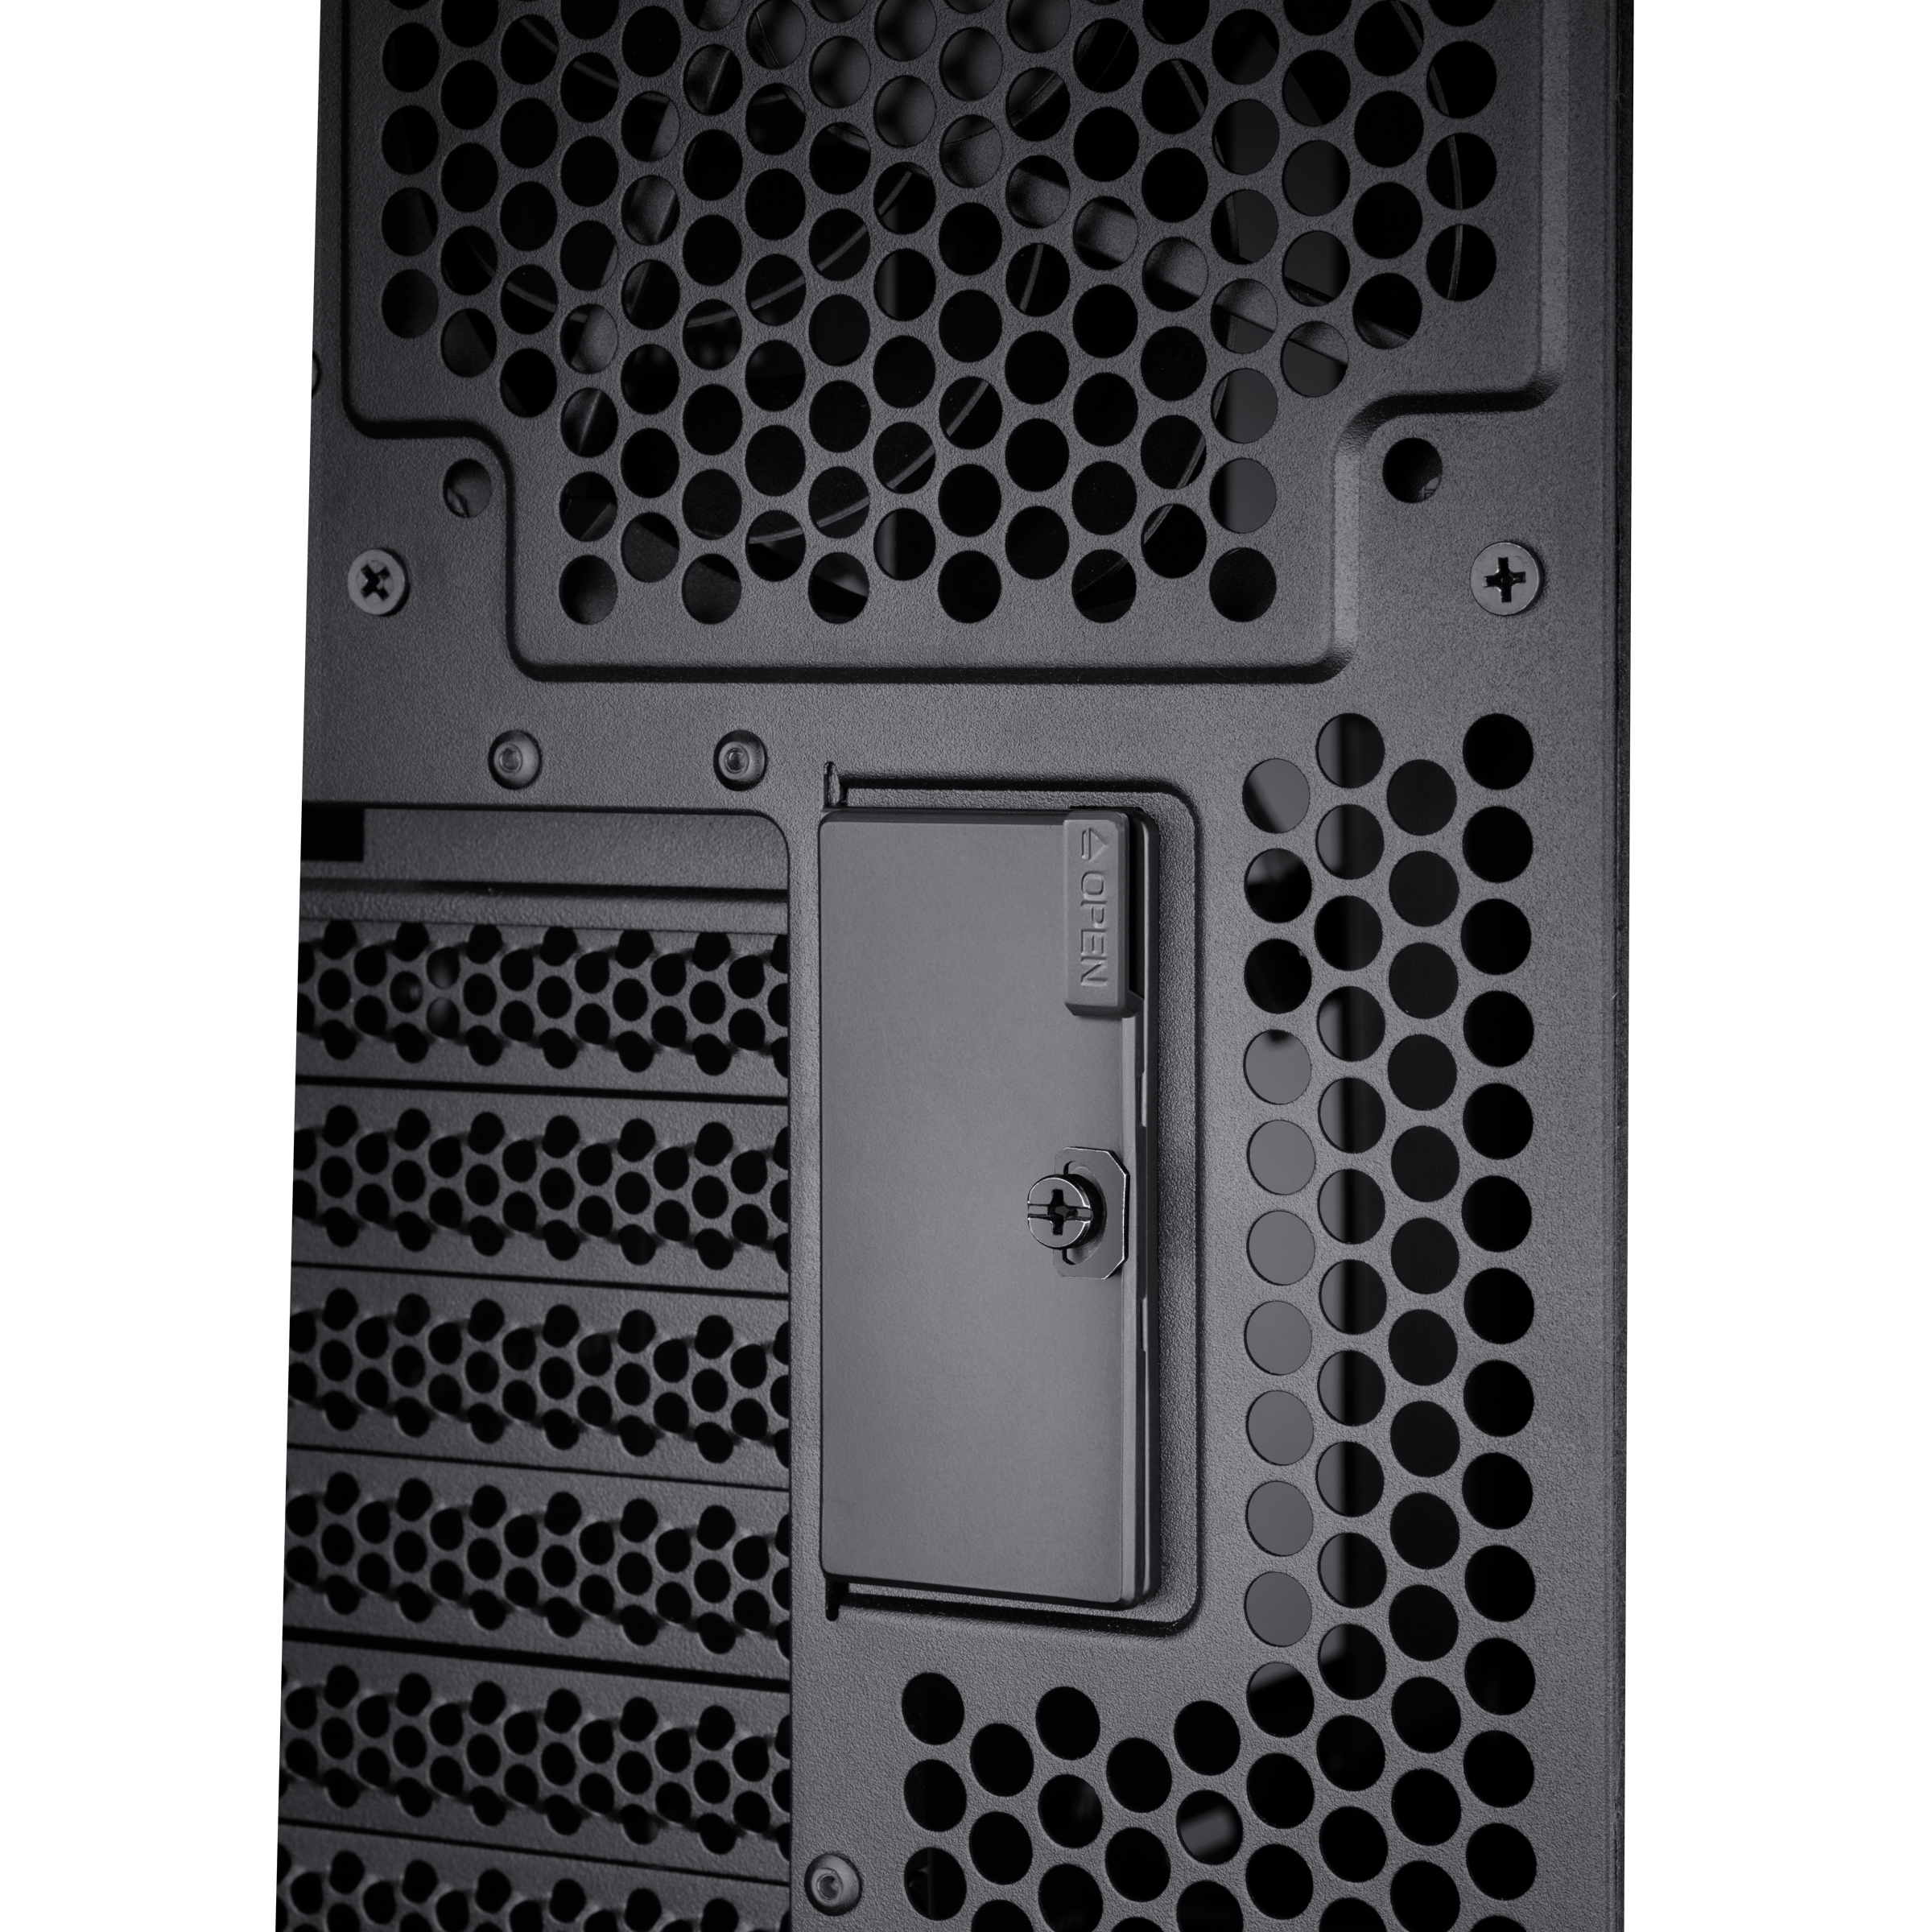 ProArt PA602 : Asus annonce un boîtier PC axé sur la Création - GinjFo